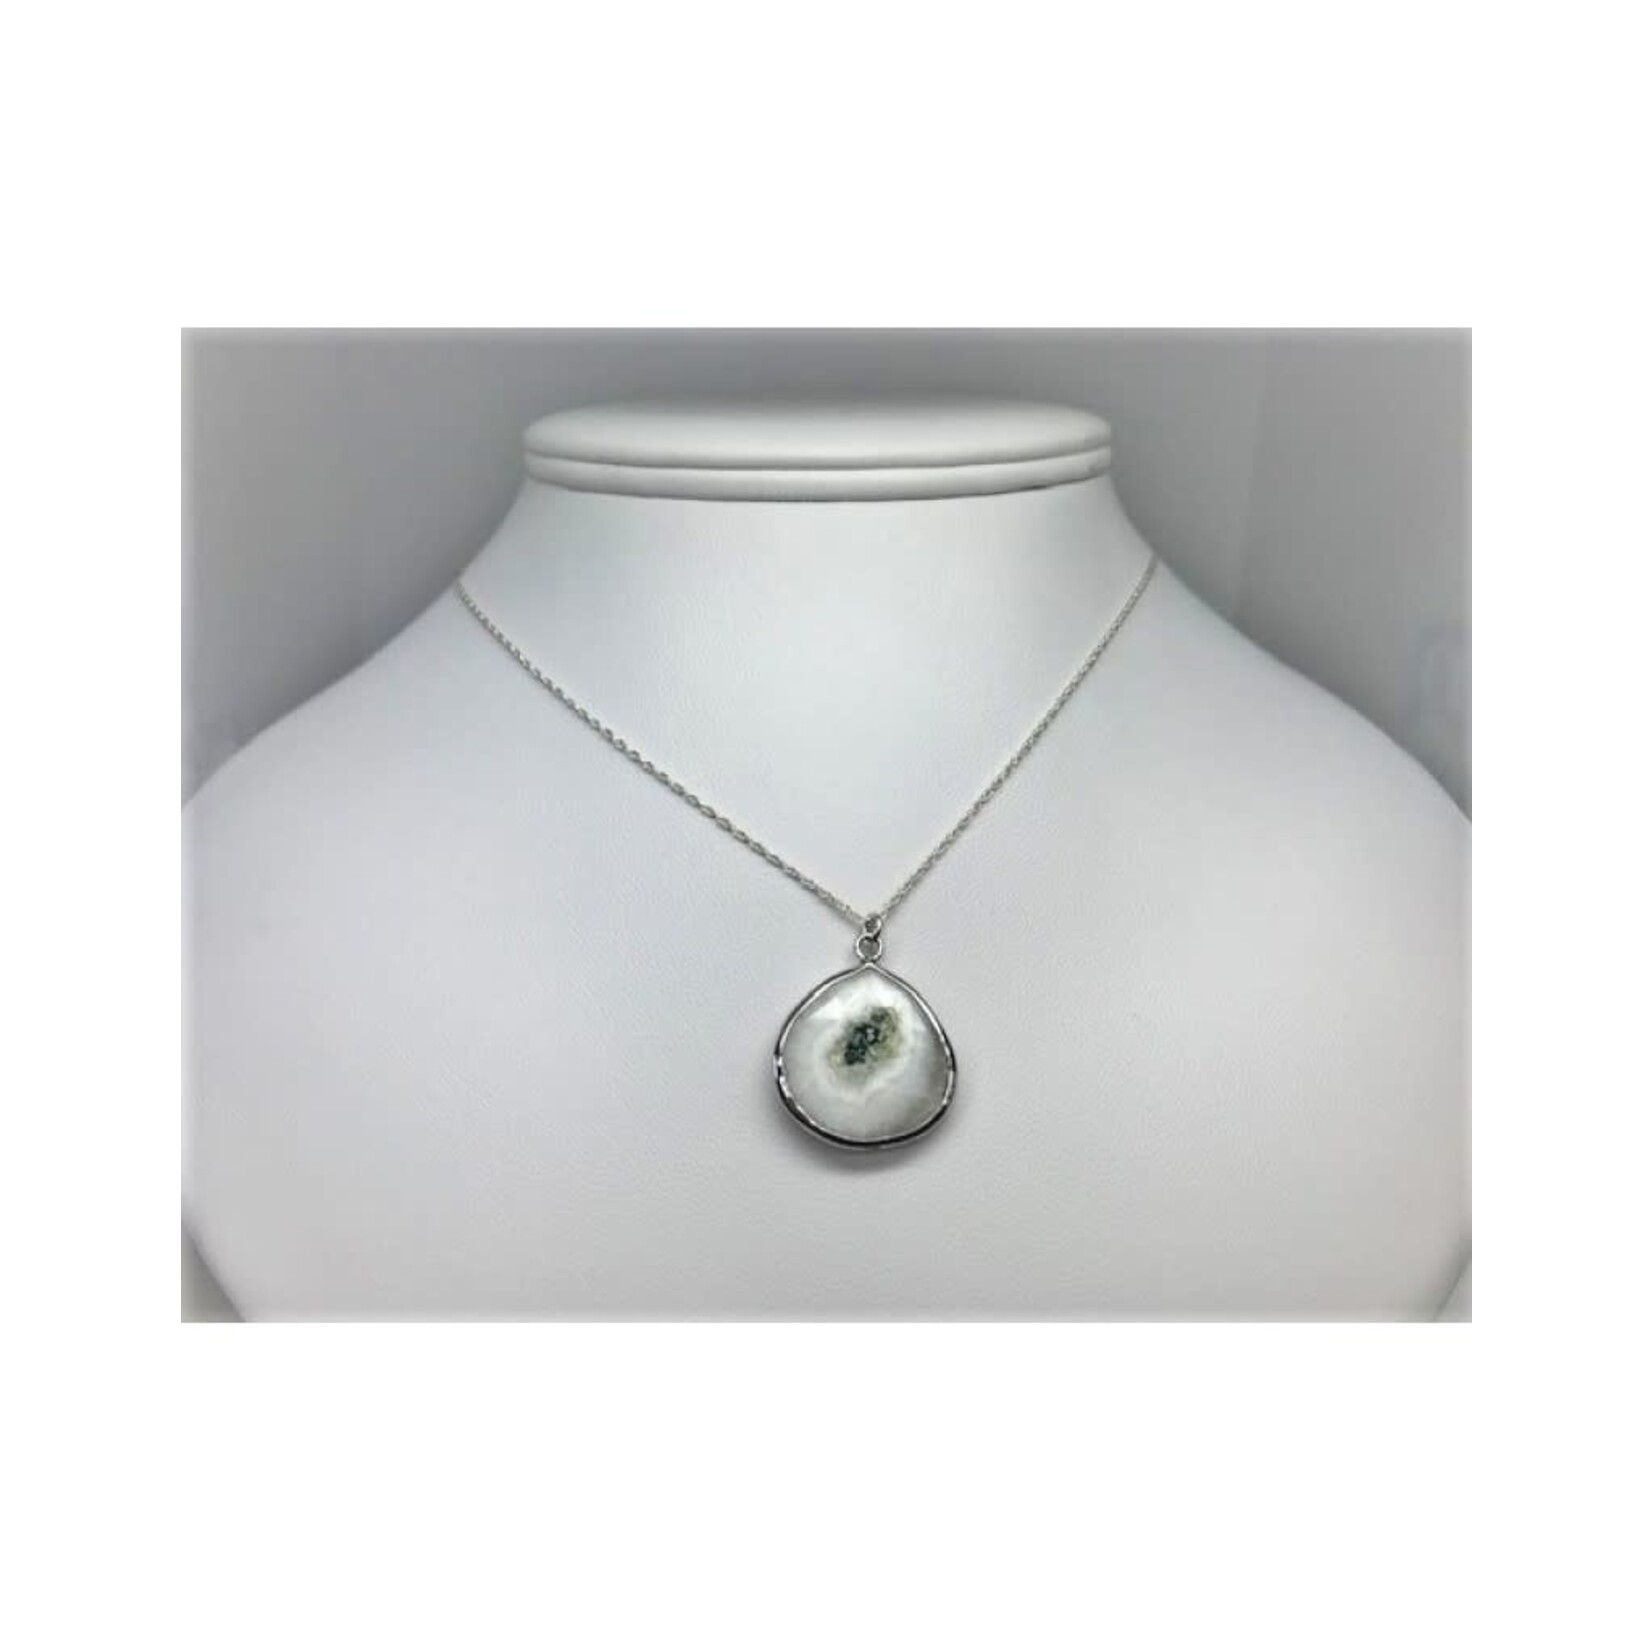 Solar Quartz Pendant Necklace - Silver